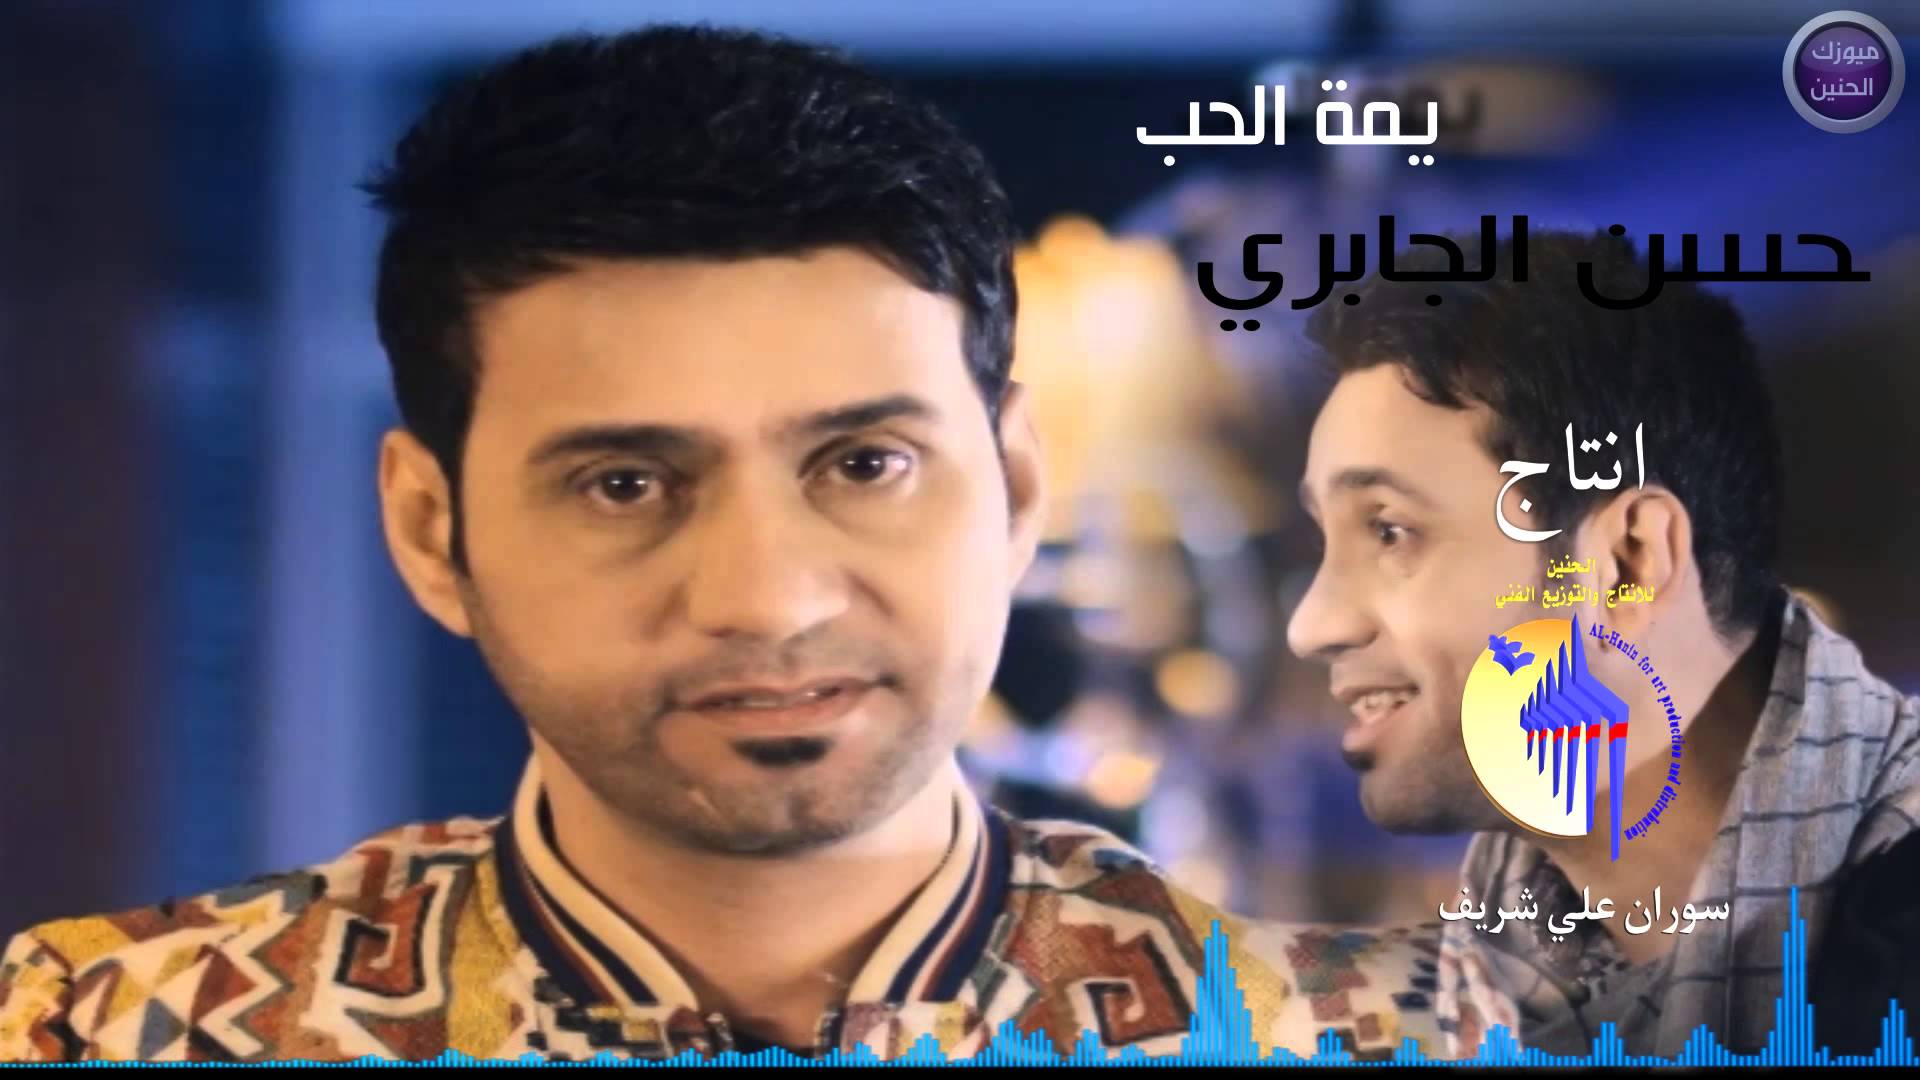 يوتيوب تحميل اغنية يمه الحب حسن الجابري 2015 Mp3